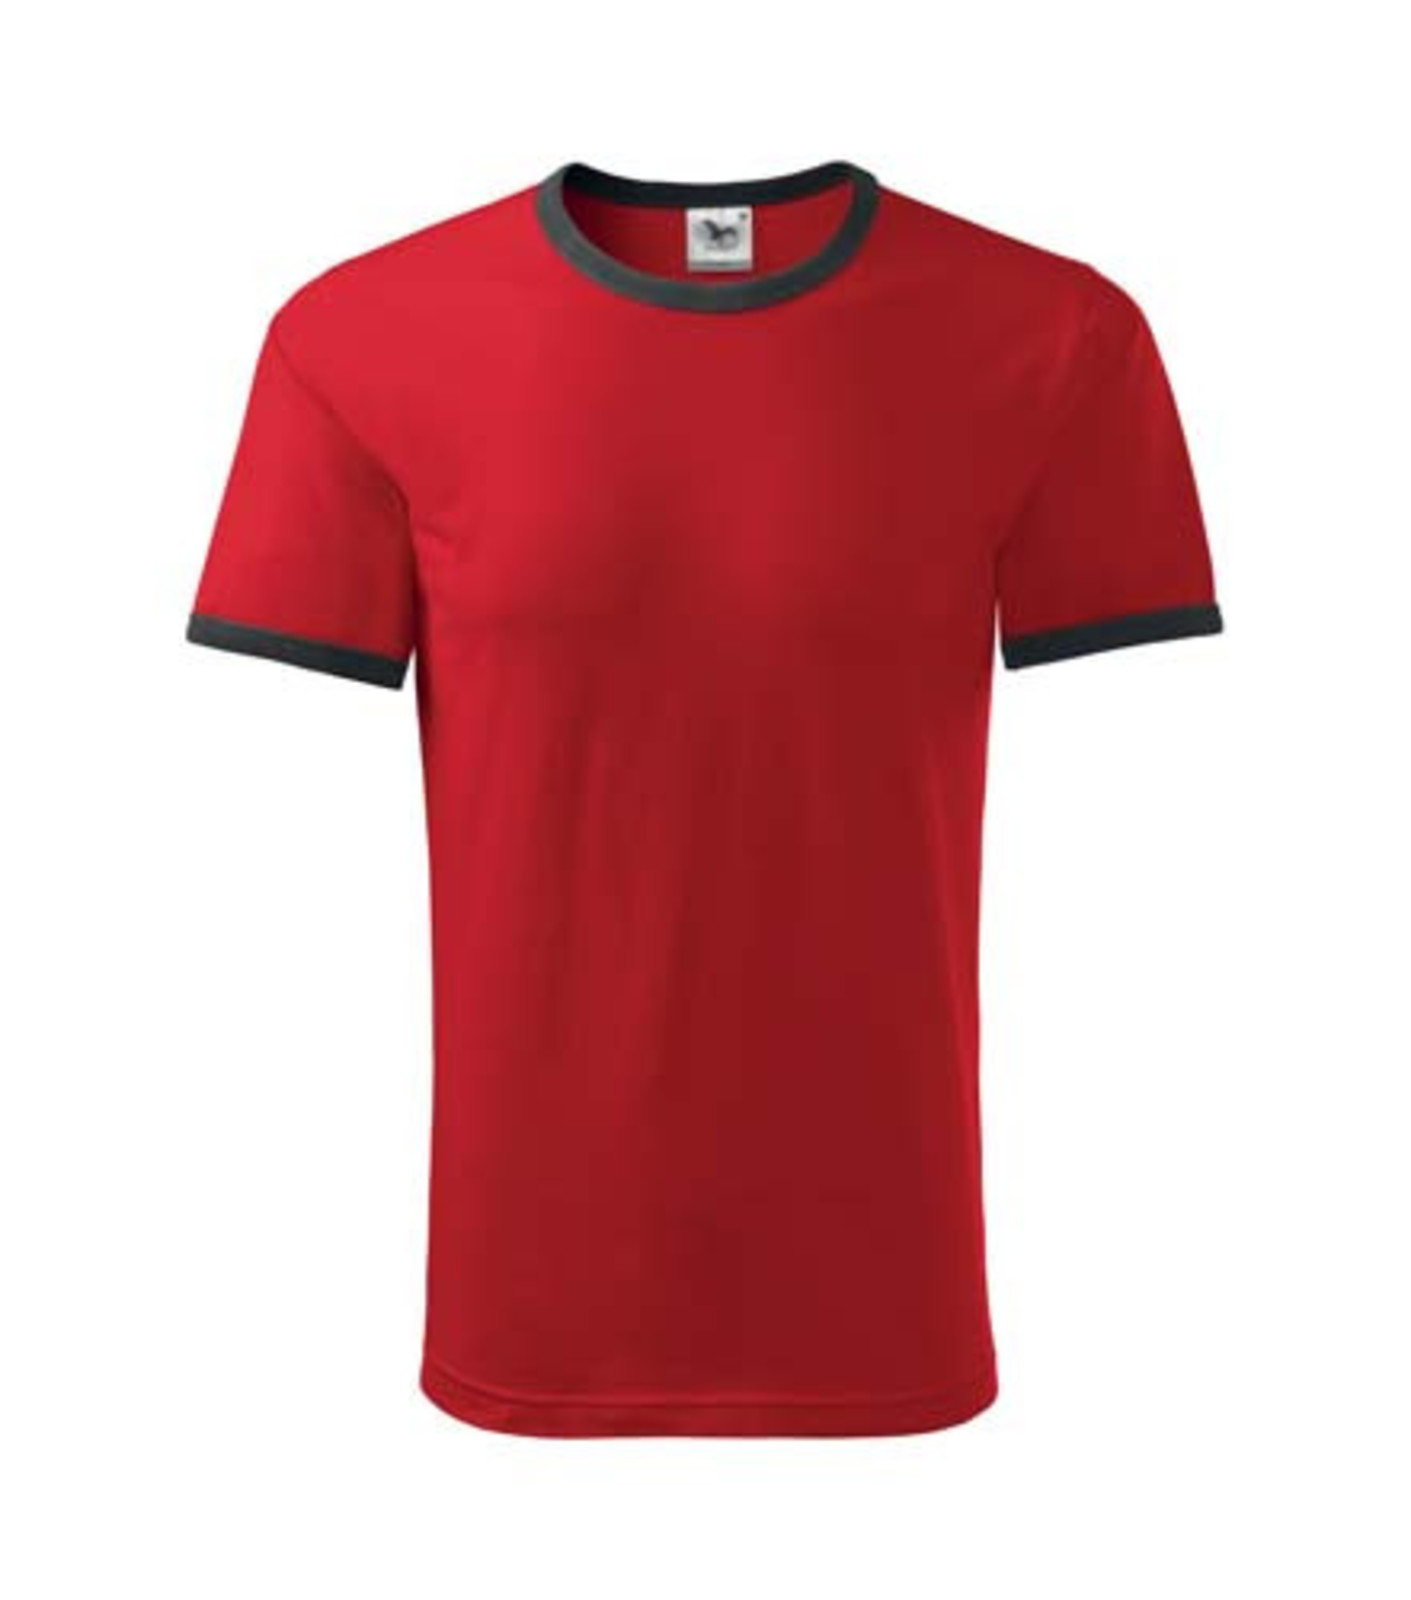 Unisex tričko Adler Infinity 131 - veľkosť: L, farba: čierna/červená